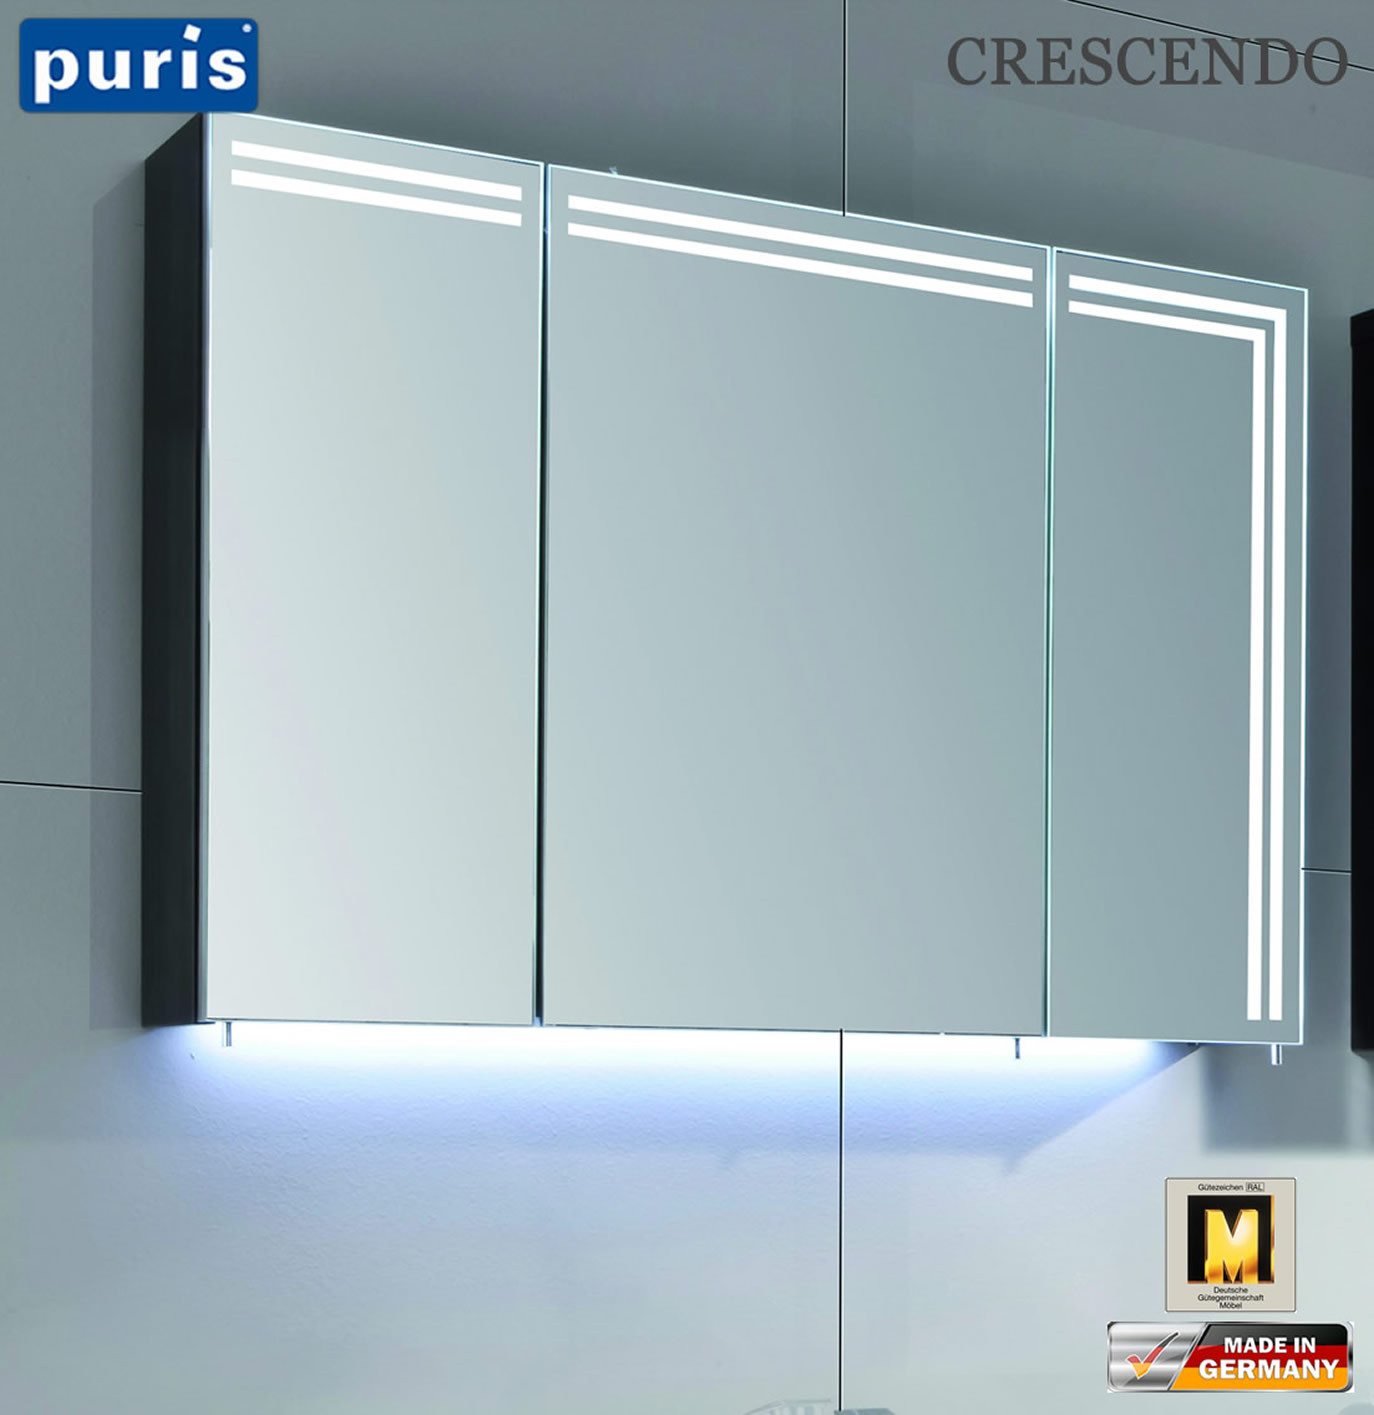 Spiegelschrank Led
 Puris Crescendo LED Spiegelschrank 90 cm S2A439L23